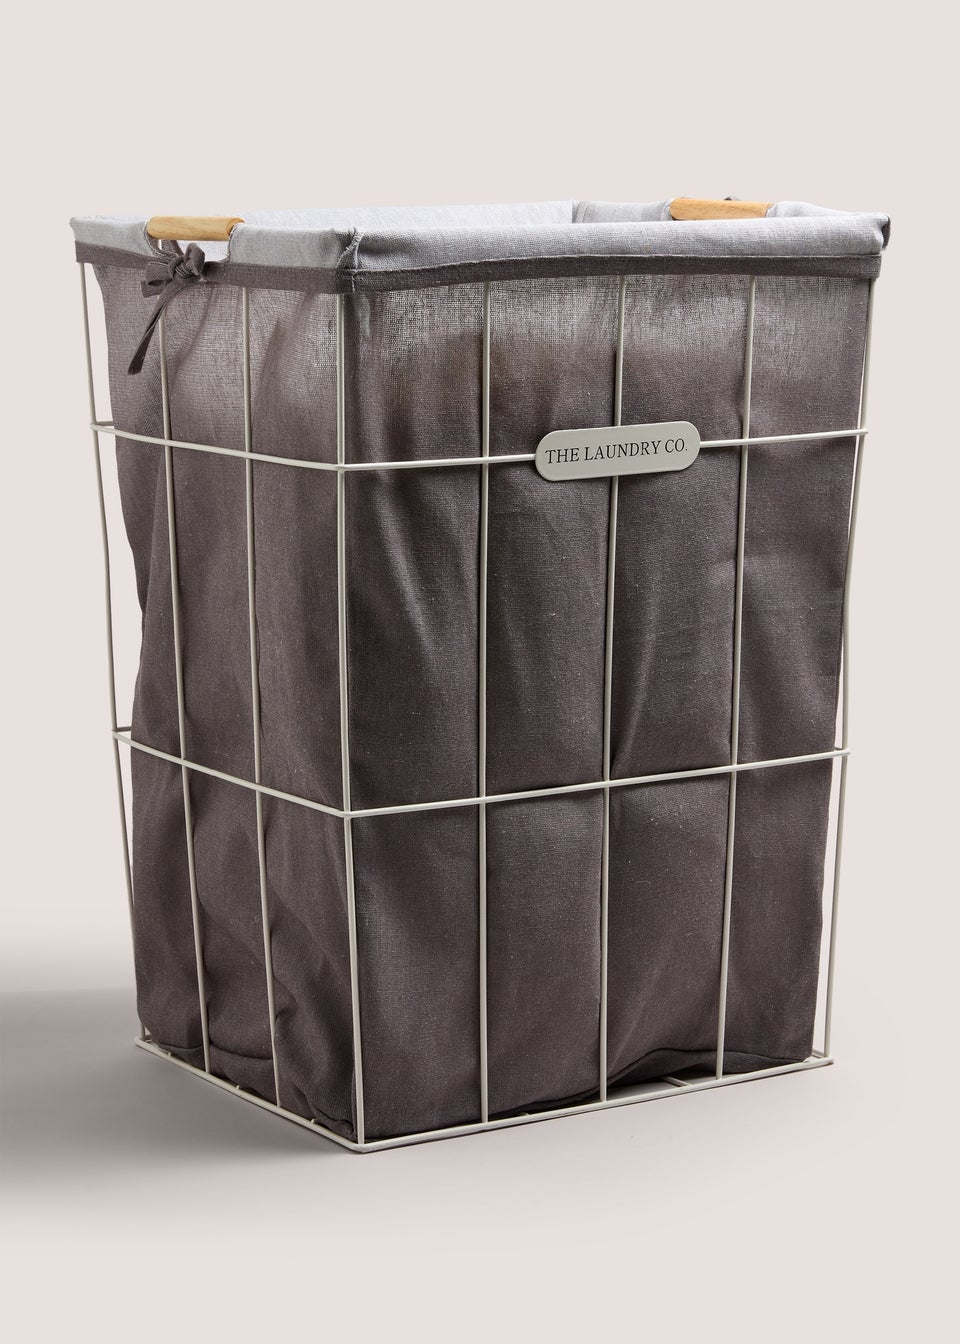 Laundry Co Grey Wire Frame Bag (54x38x38cm)